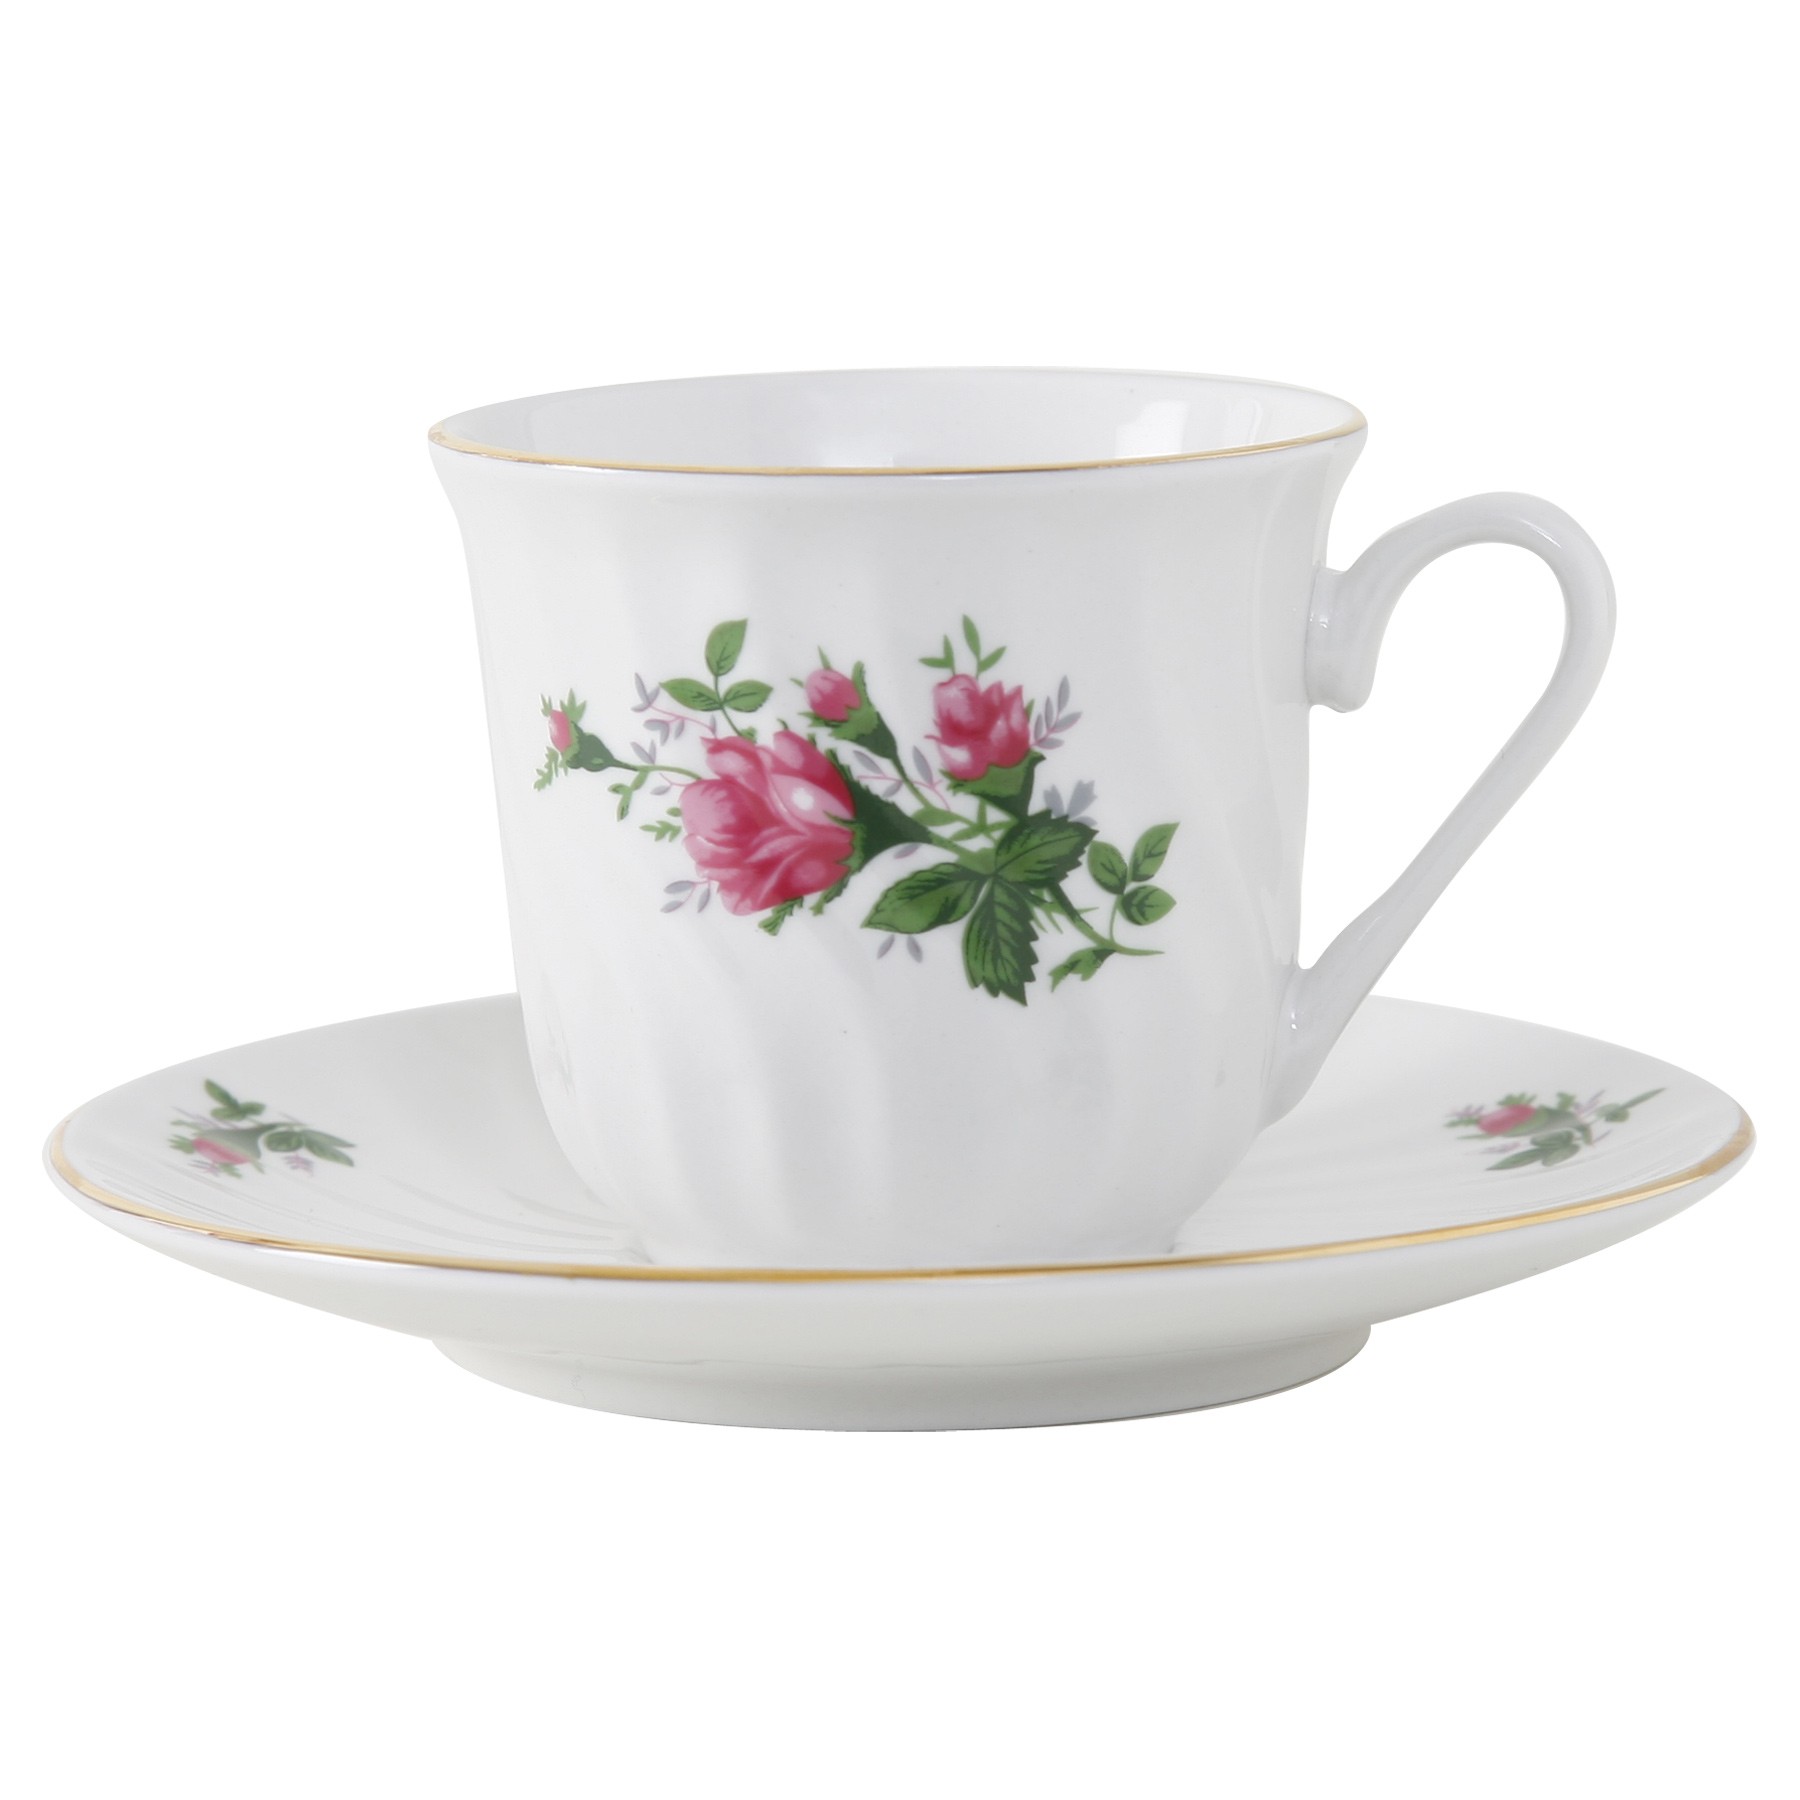 Vintage Rose Porcelain Teacup and Saucer - Set of 6